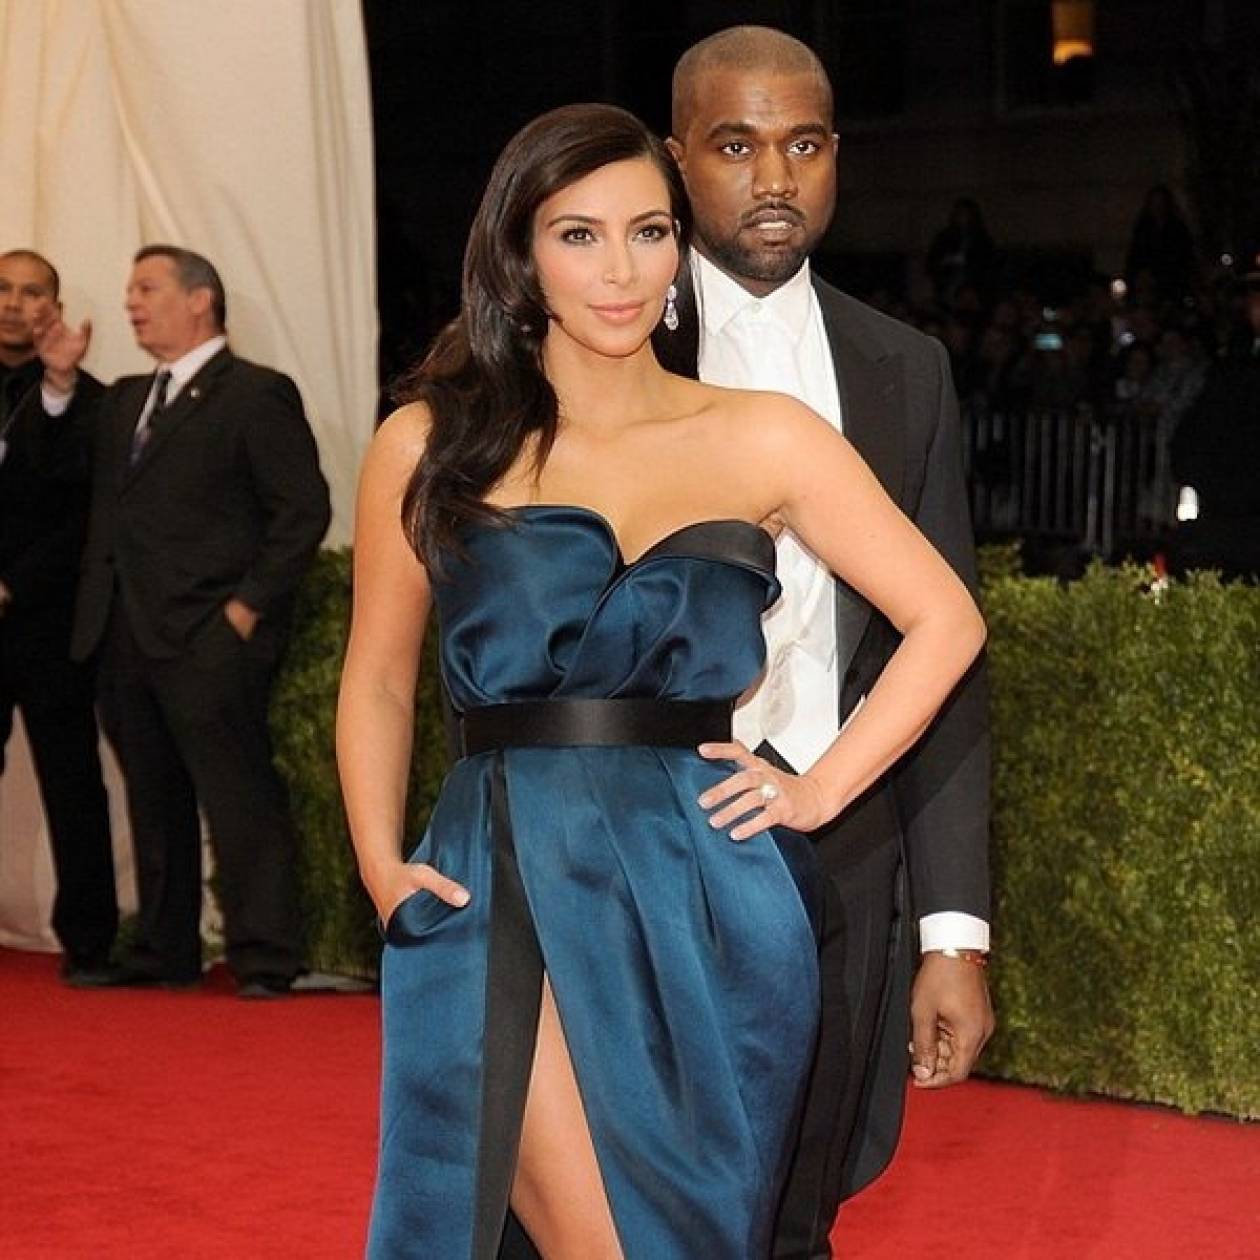 Δείτε το προσκλητήριο γάμου της Kim Kardashian και του Kanye West